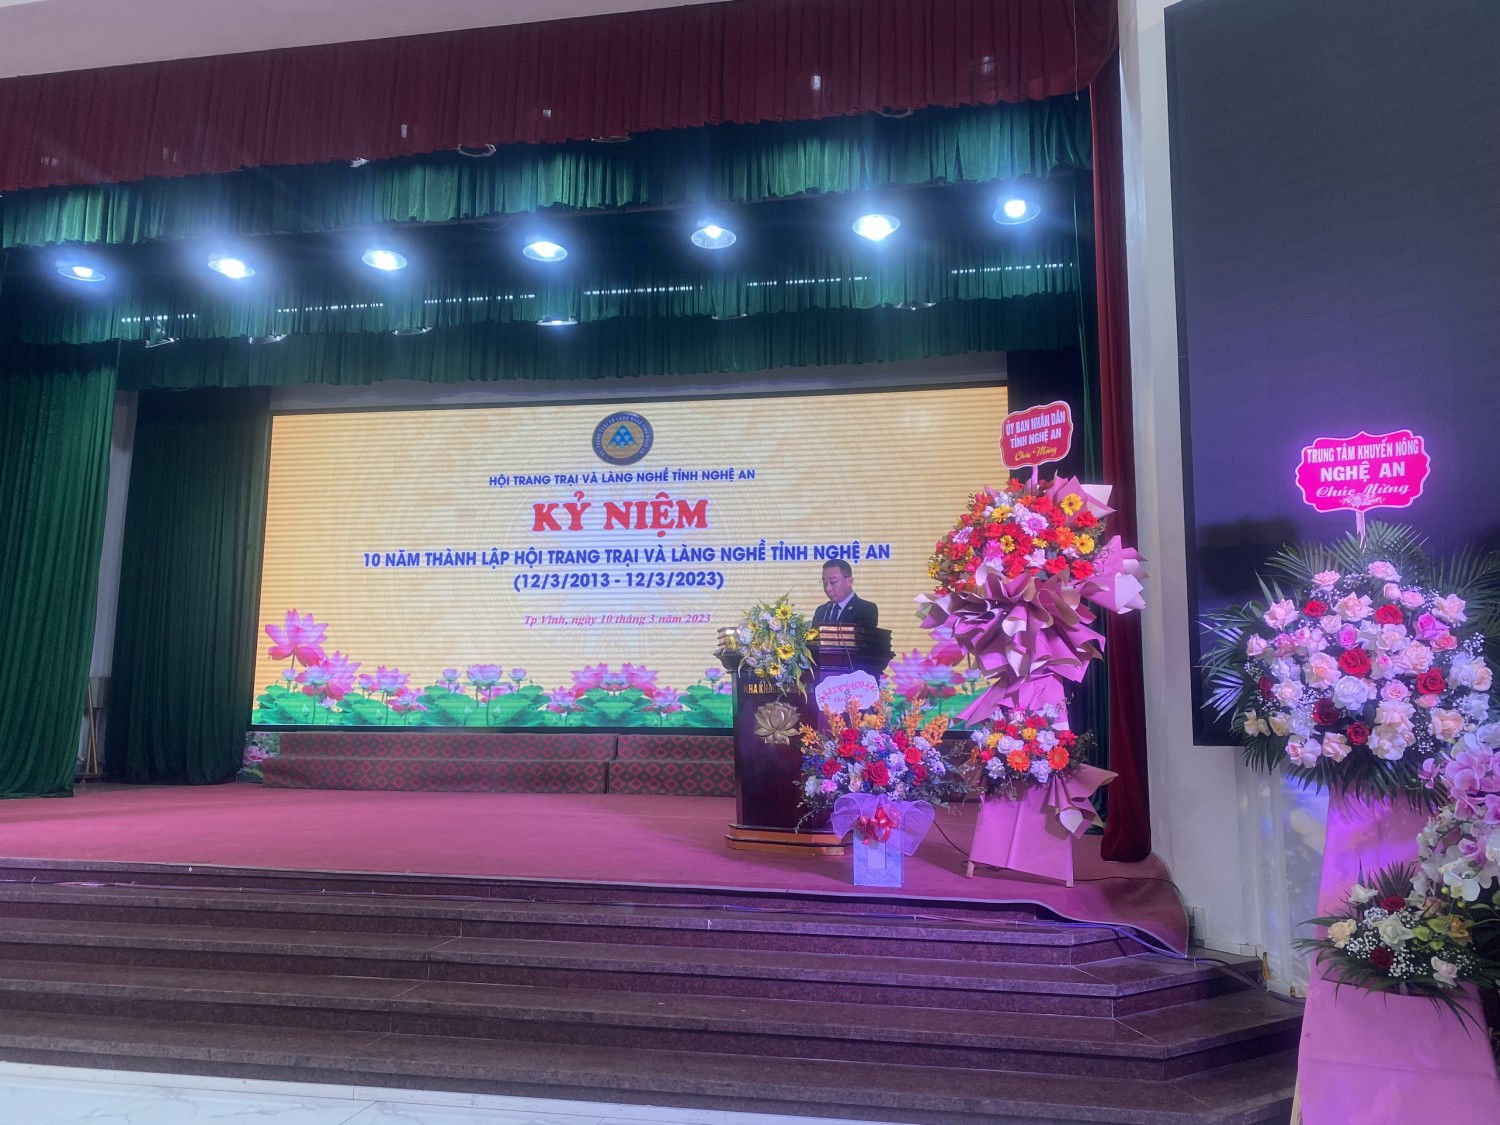 Hội Trang trại và làng nghề tỉnh Nghệ An- Kỷ niệm 10 năm thành lập